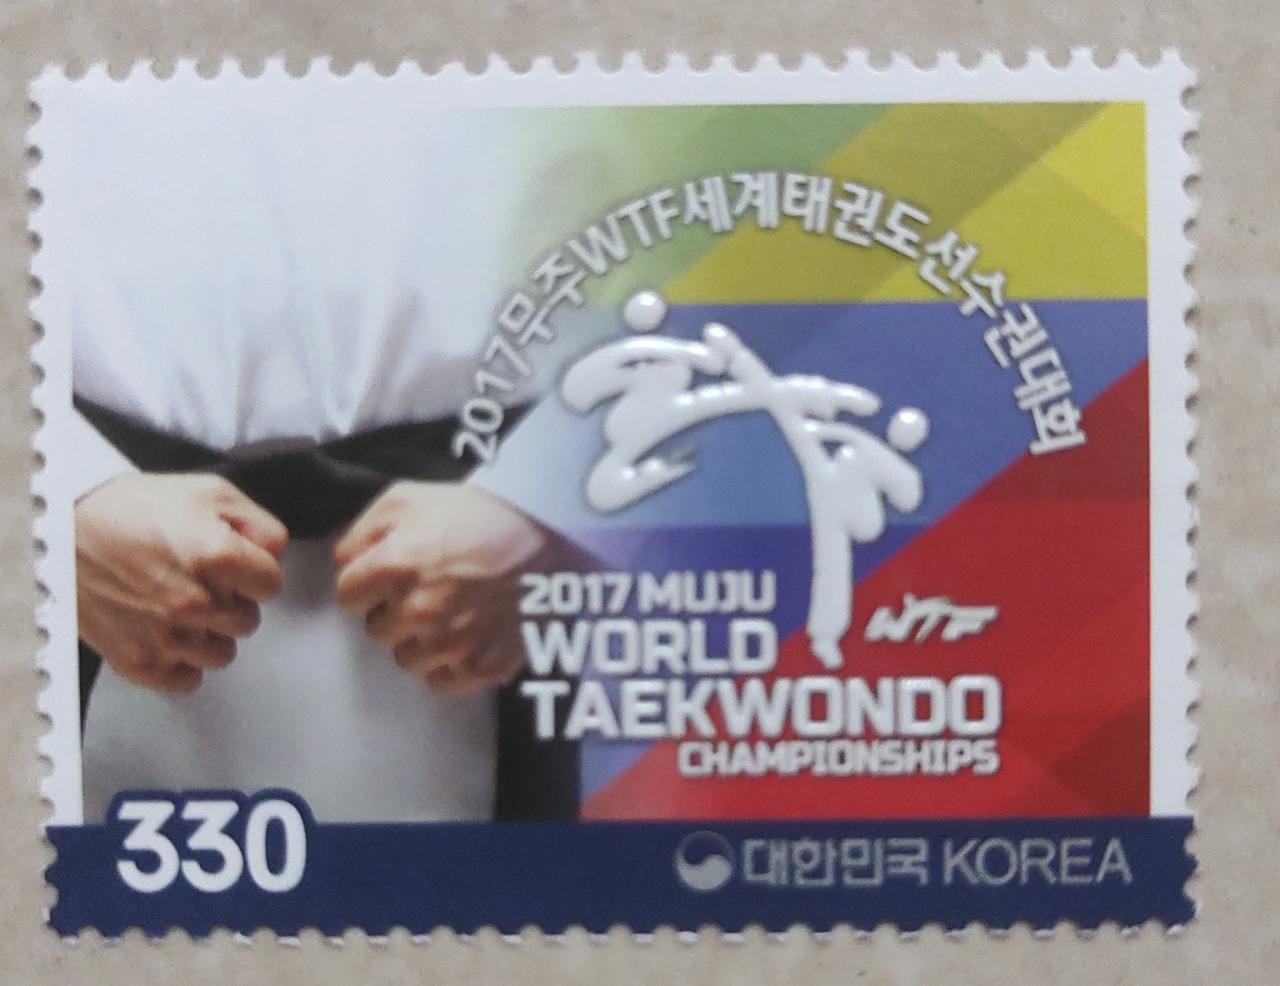 Korea taekwondo stamp with high emboss.